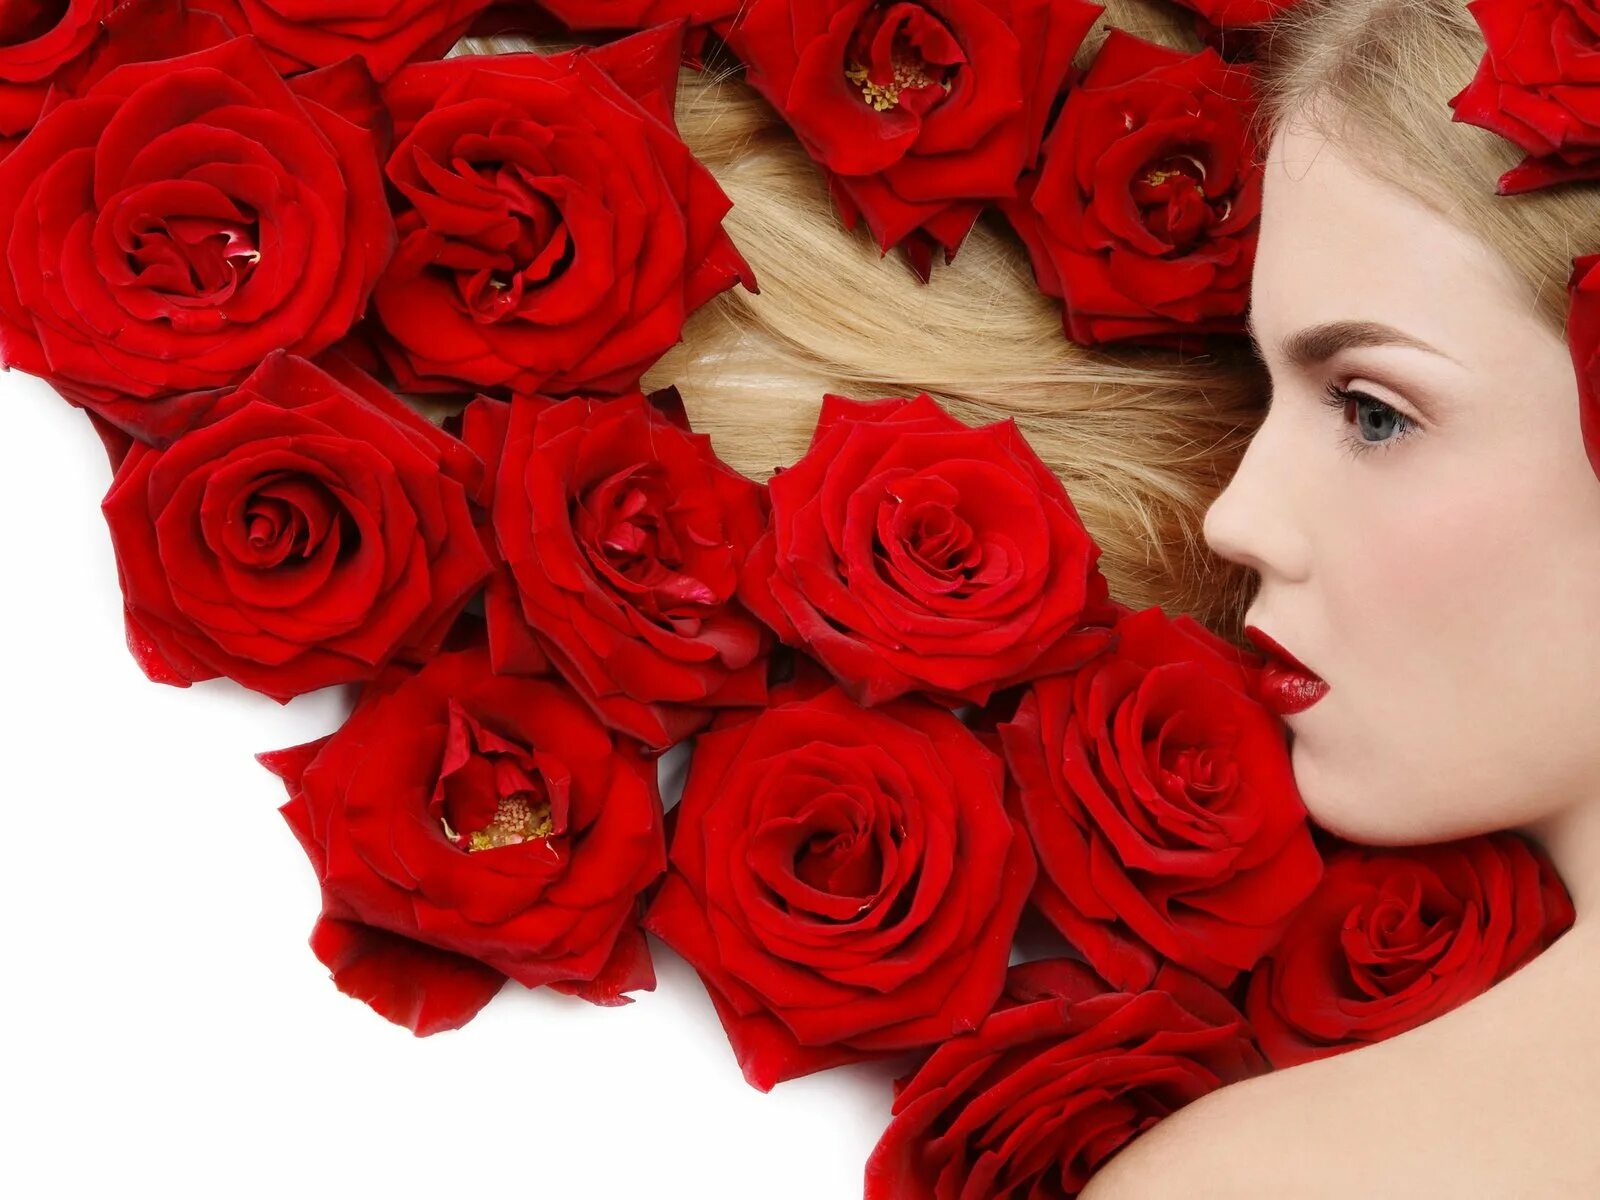 Rose blonde. Женщина с розами. Девушка с цветком. Девушка с красными розами. Красивые женские лица.